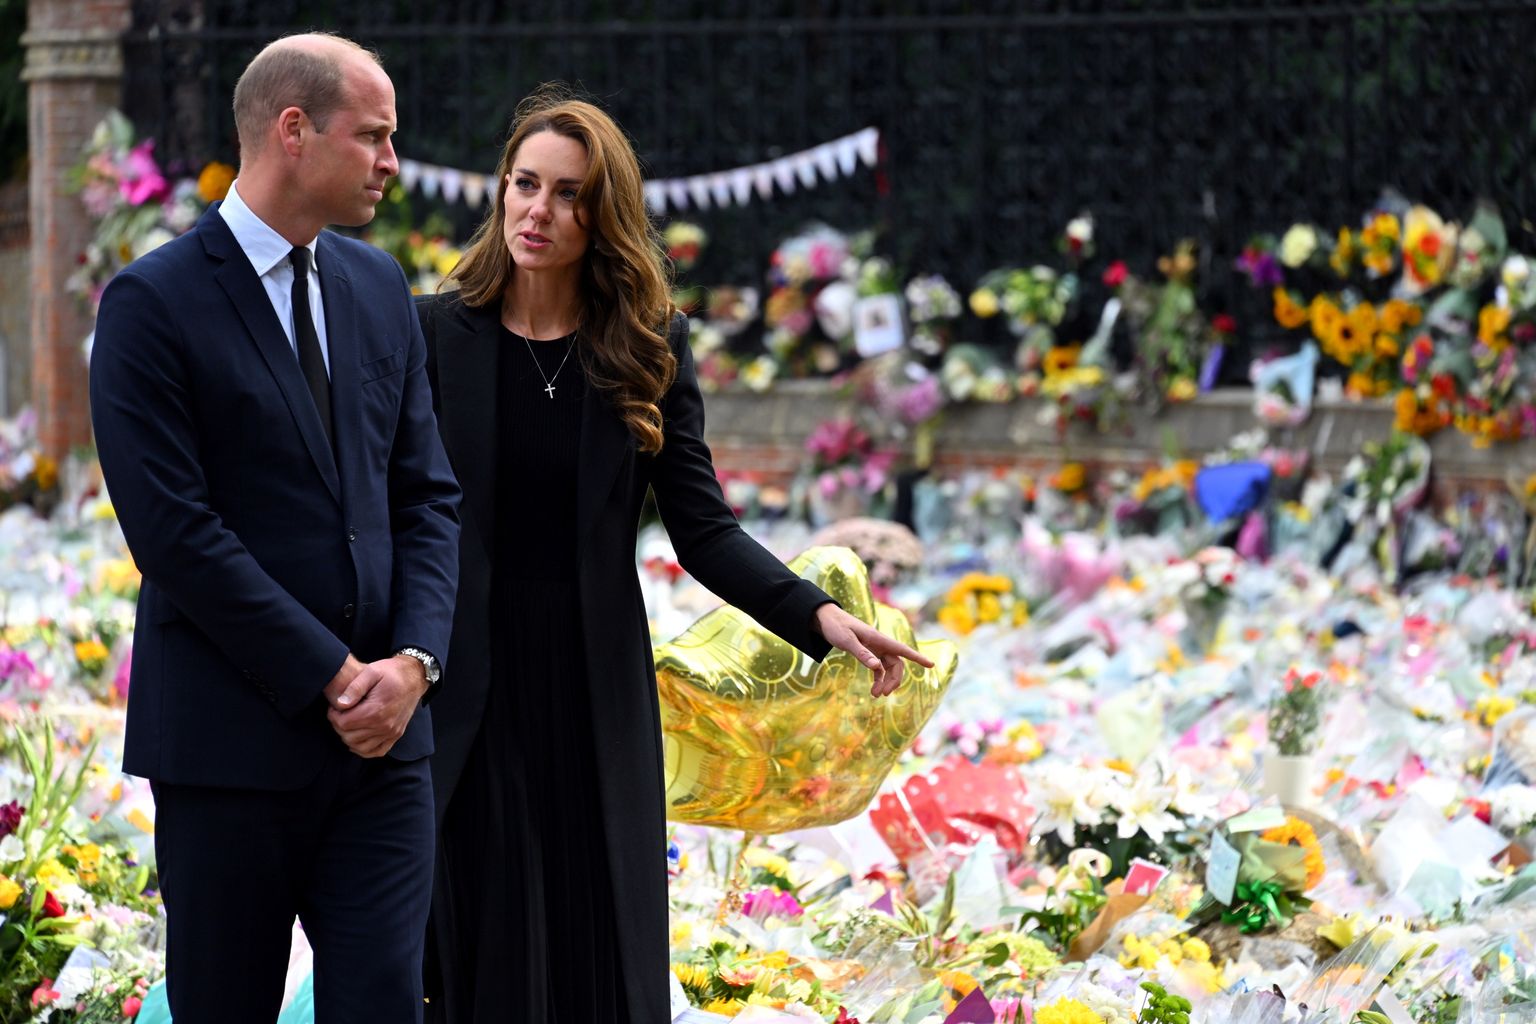 Walesi prints William ja Walesi printsess Cartherine 15. septembril 2022 vaatamas Sandringhami lossi juurde toodud lilli, kaarte, fotosid ja küünlaid kuninganna Elizabeth II mälestuseks